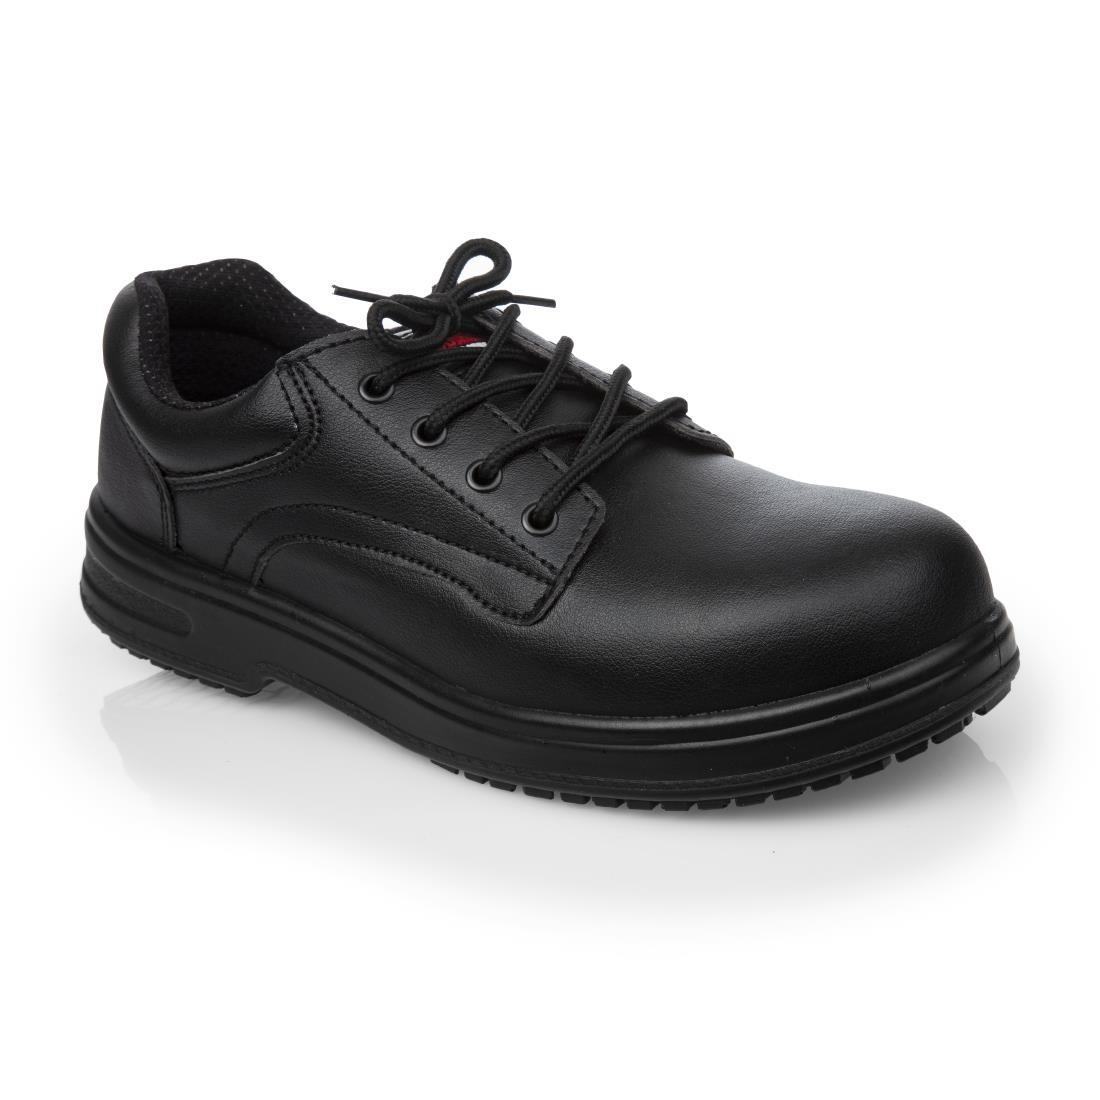 Slipbuster Basic Toe Cap Safety Shoes Black 40 - BB497-40  - 1